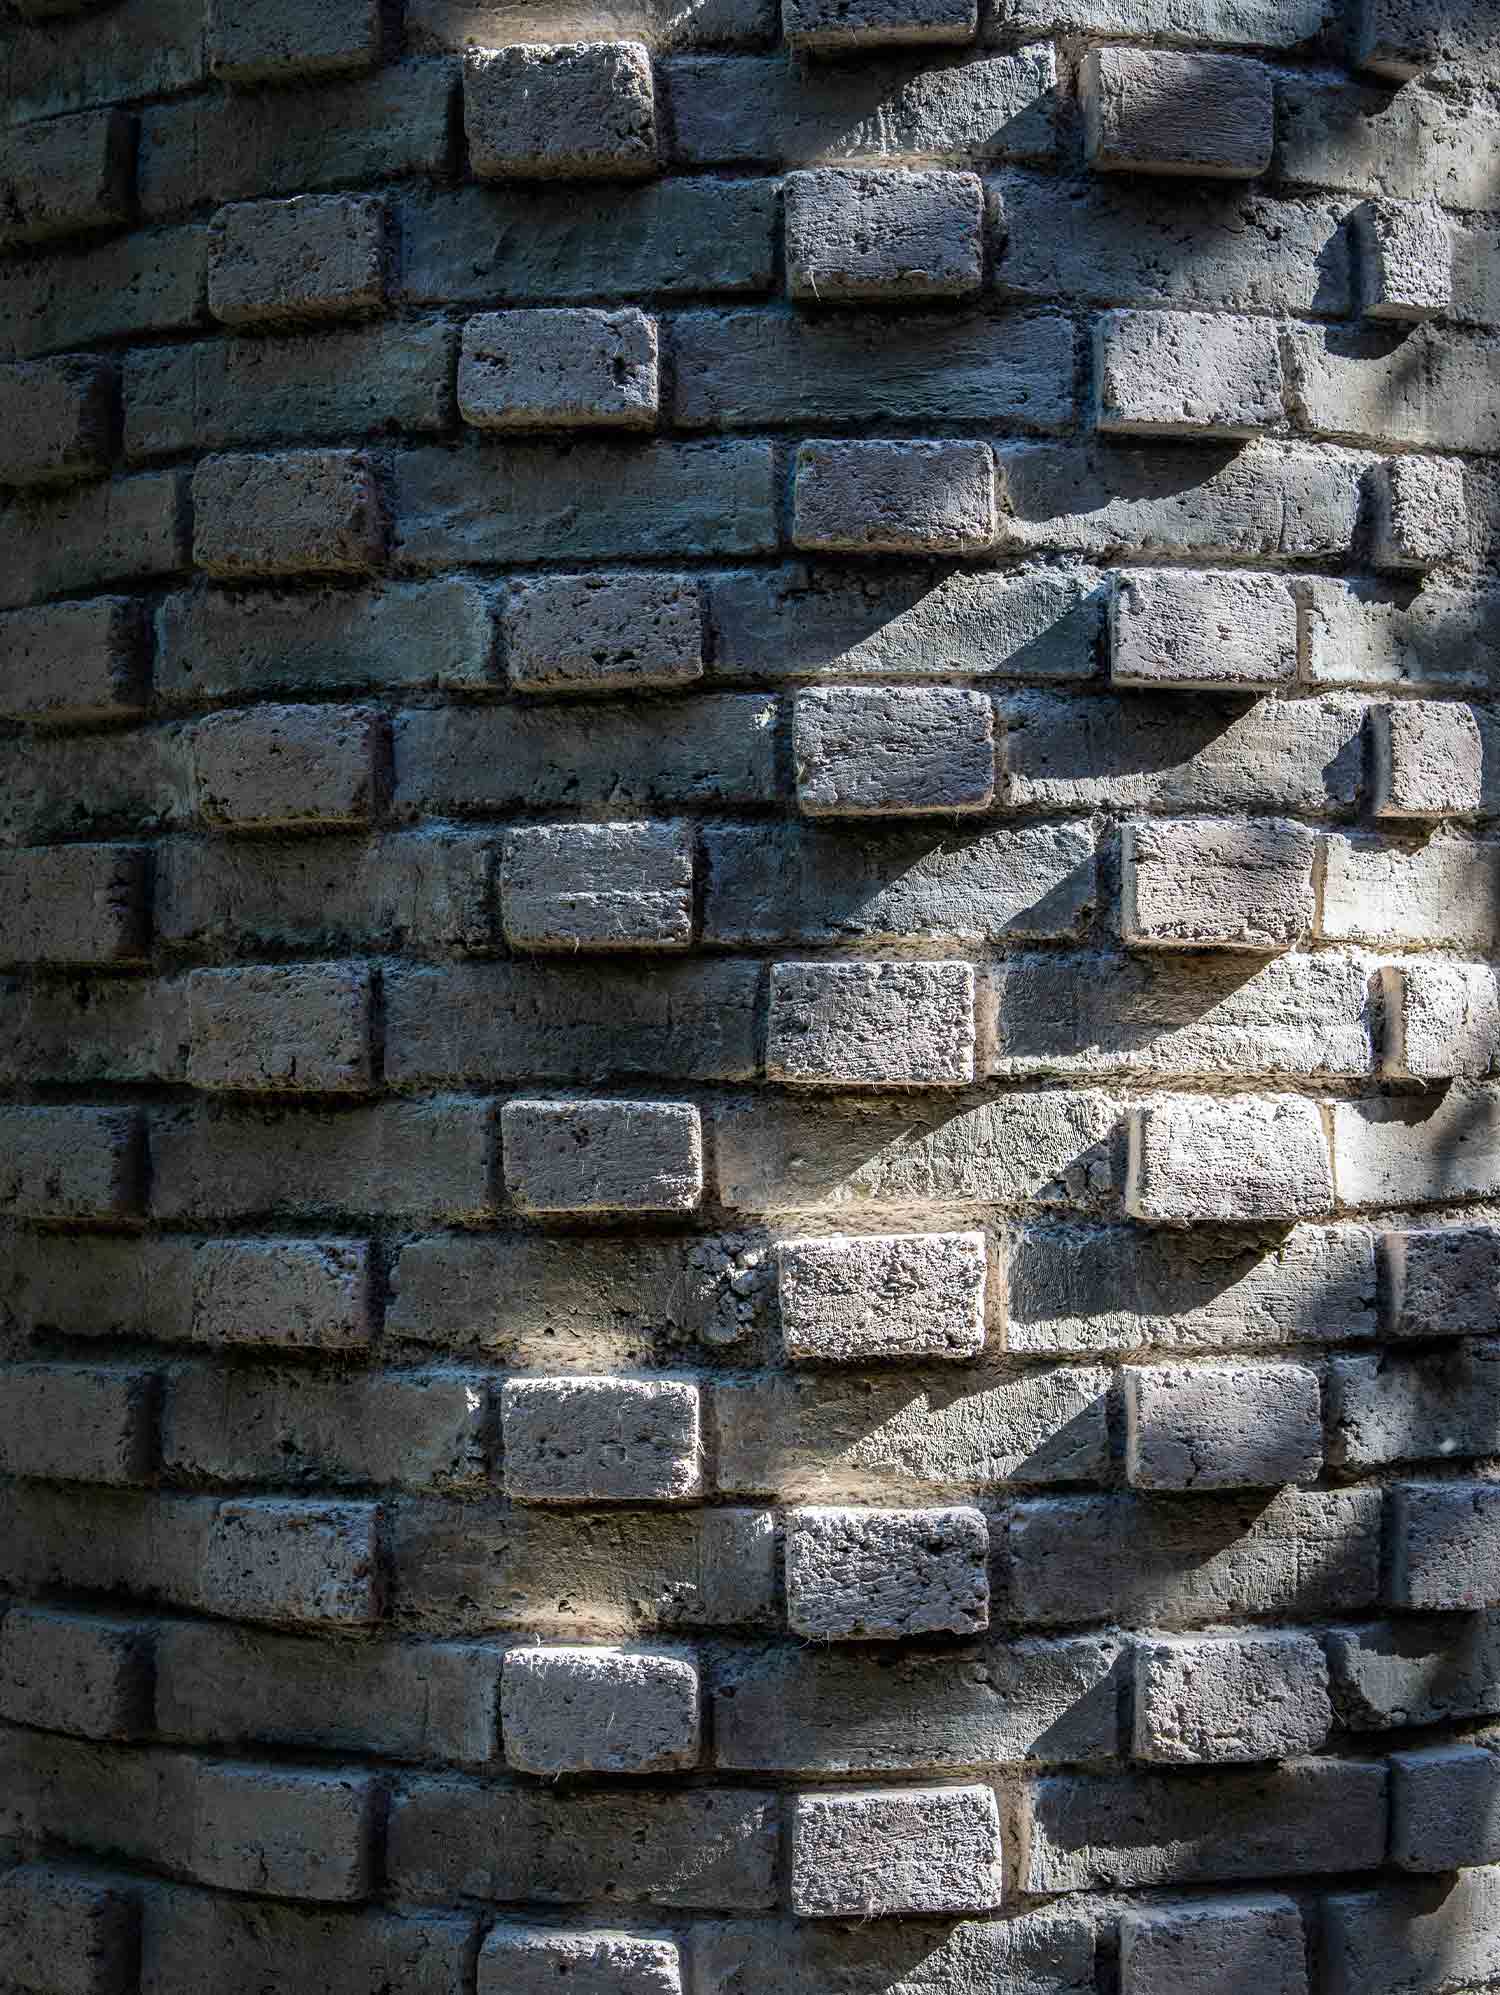 A Brick for Venice brick structure